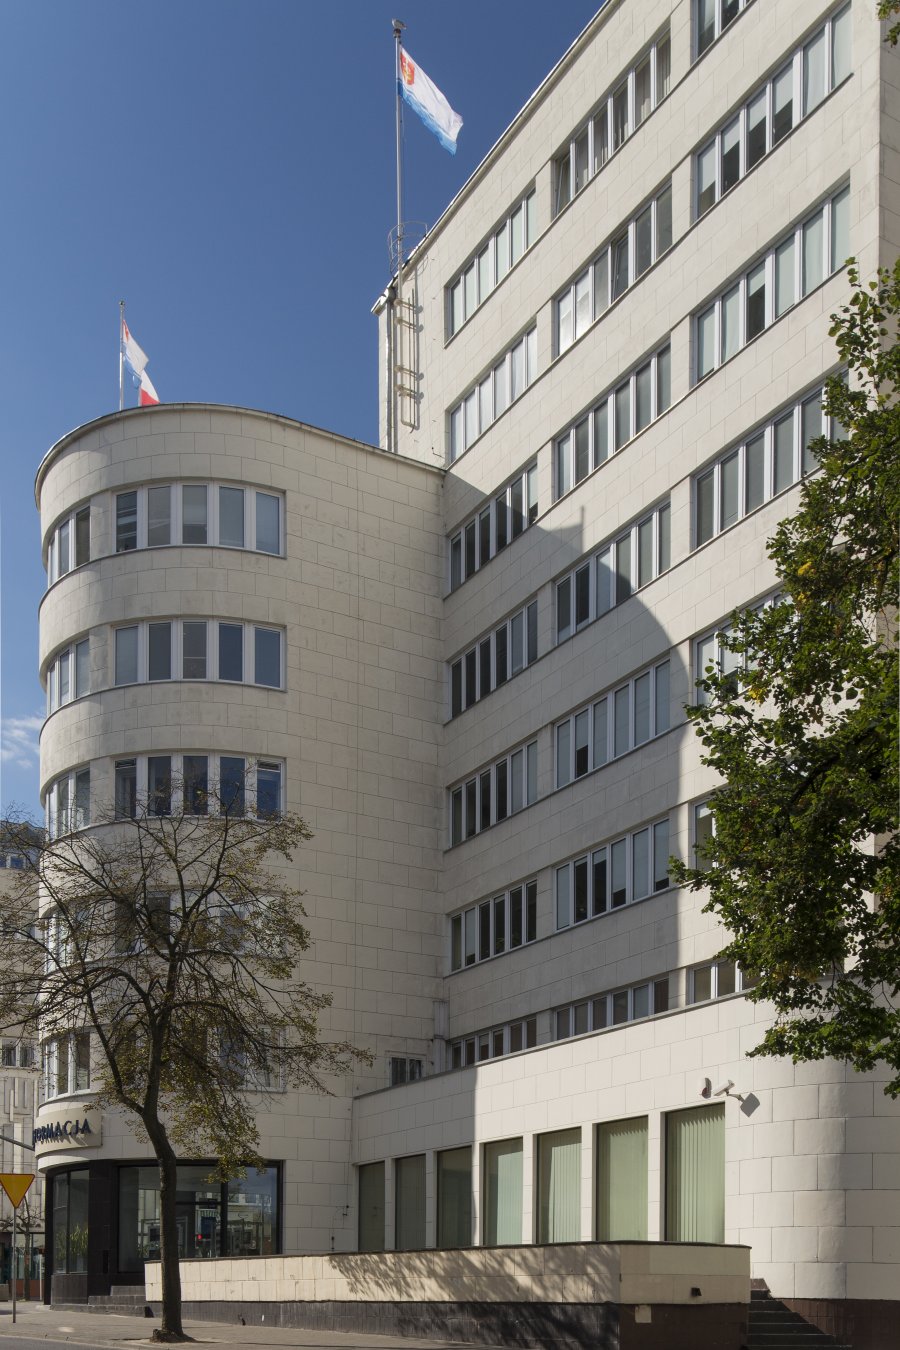 Budynek biurowy ZUS, ob. Urząd Miasta Gdyni przy ul. 10 Lutego 24, jedyny w Gdyni przykład budynku, w którym płytami kamiennymi oblicowano wszystkie elewacje